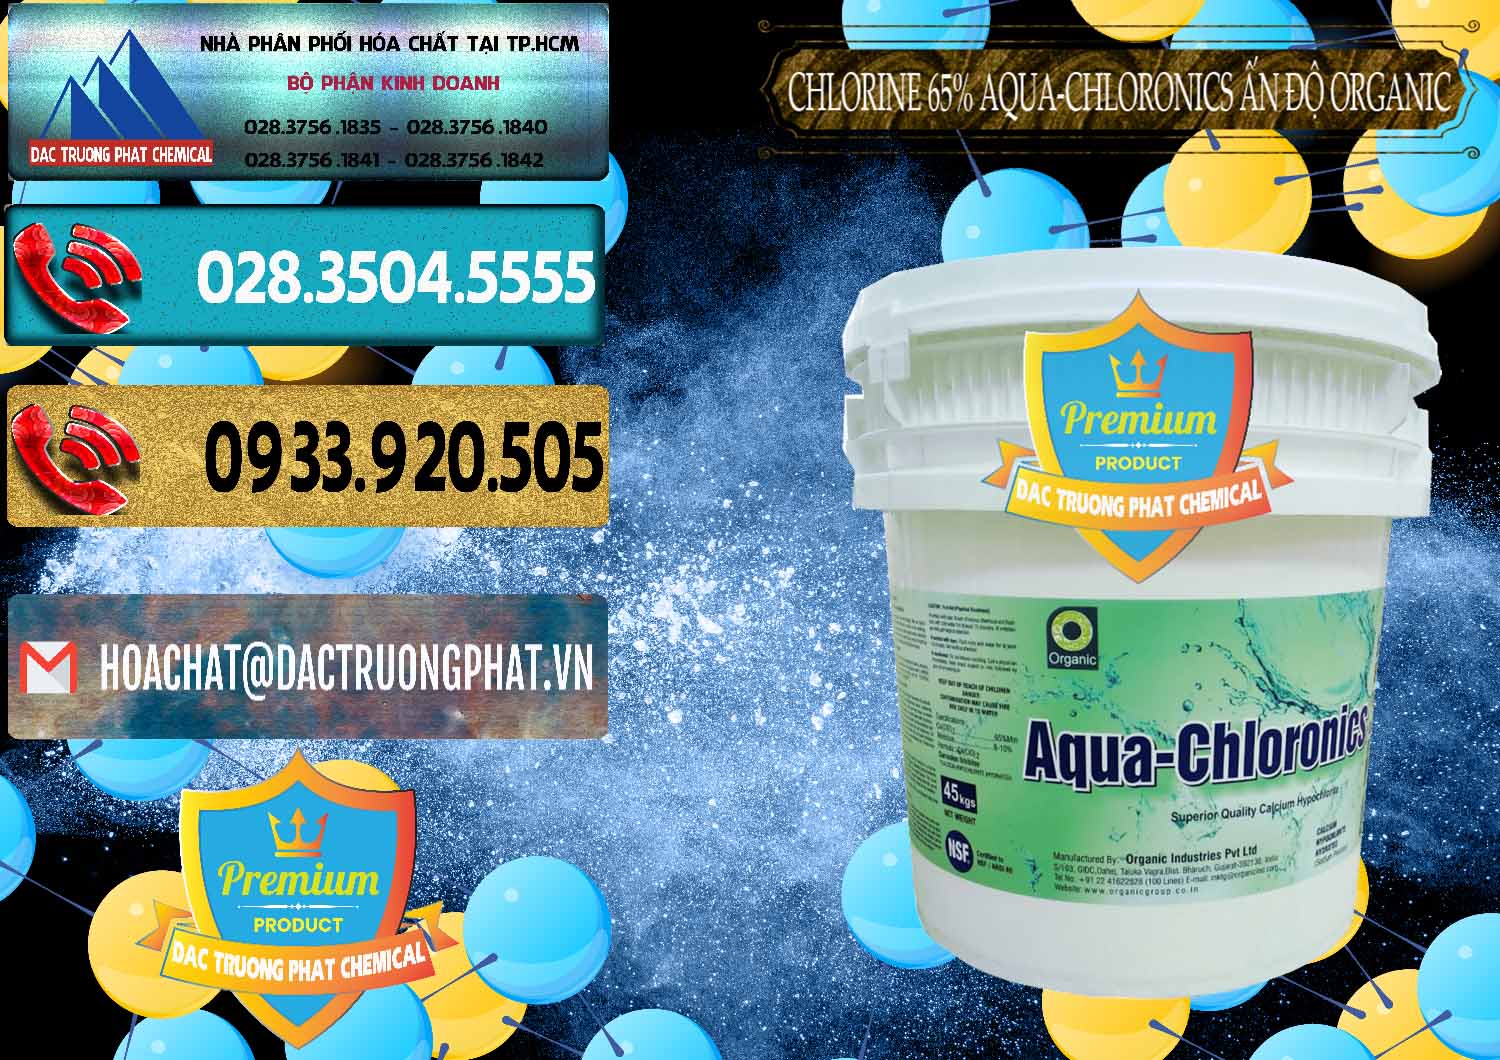 Nơi cung cấp và bán Chlorine – Clorin 65% Aqua-Chloronics Ấn Độ Organic India - 0210 - Công ty chuyên nhập khẩu - cung cấp hóa chất tại TP.HCM - hoachatdetnhuom.com